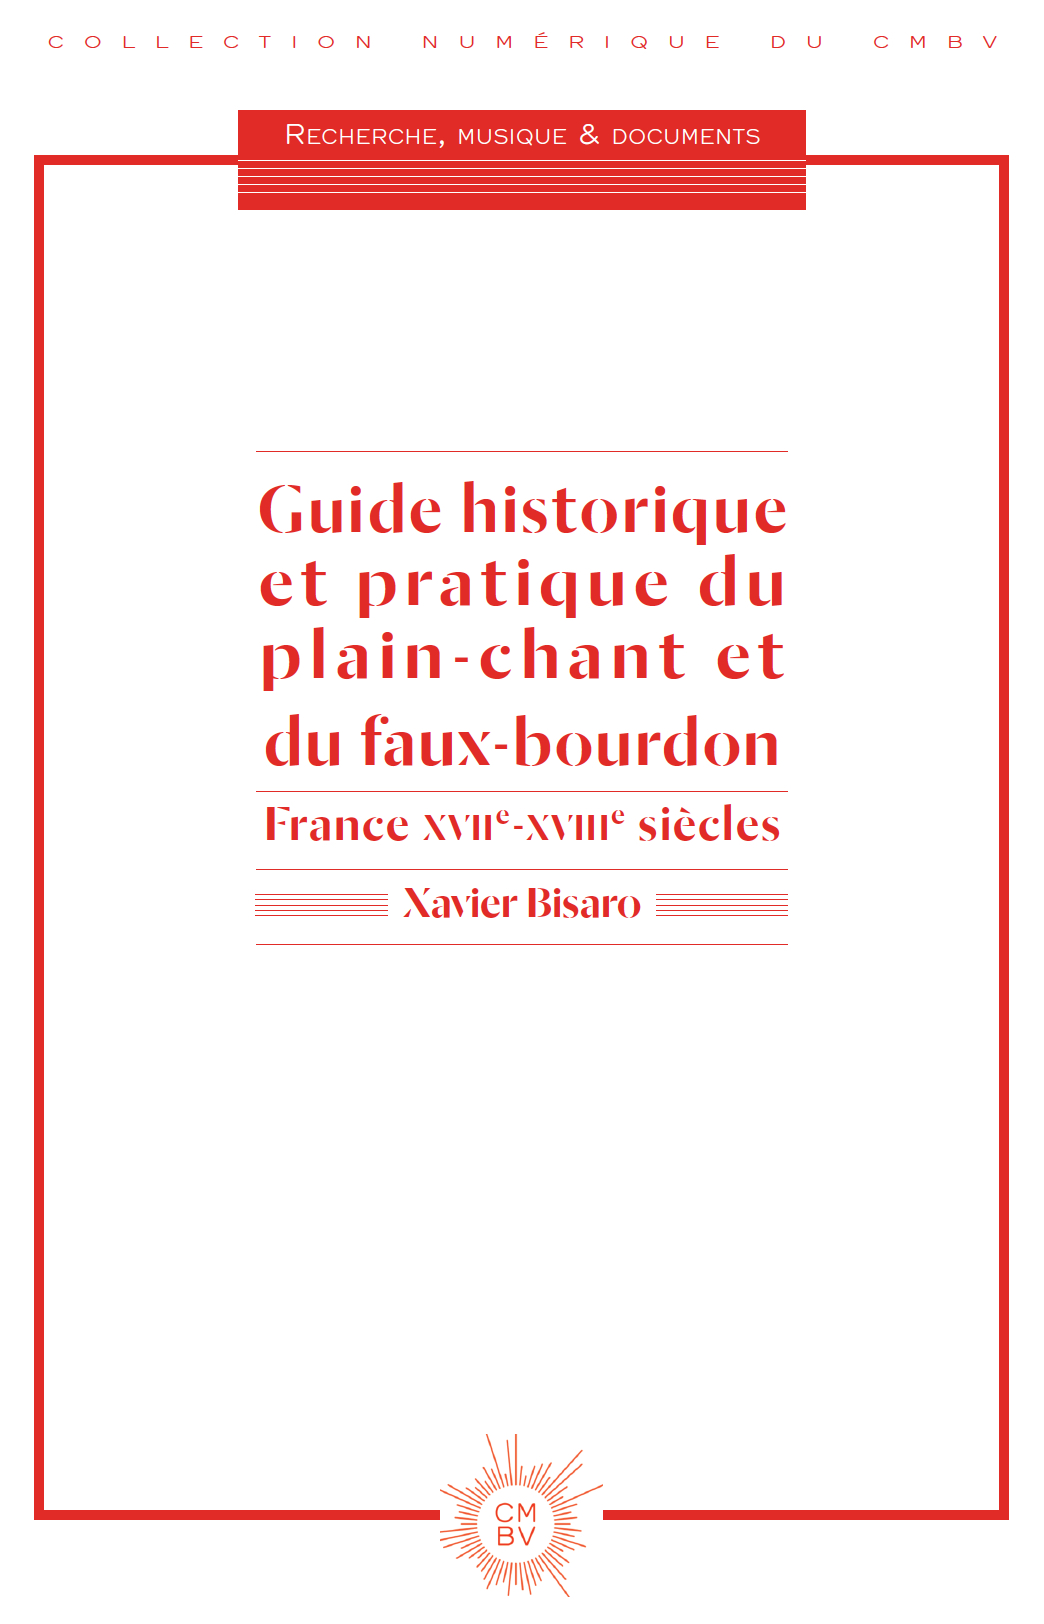 Guide historique et pratique du plain-chant (nouvelle publication, septembre 2017)